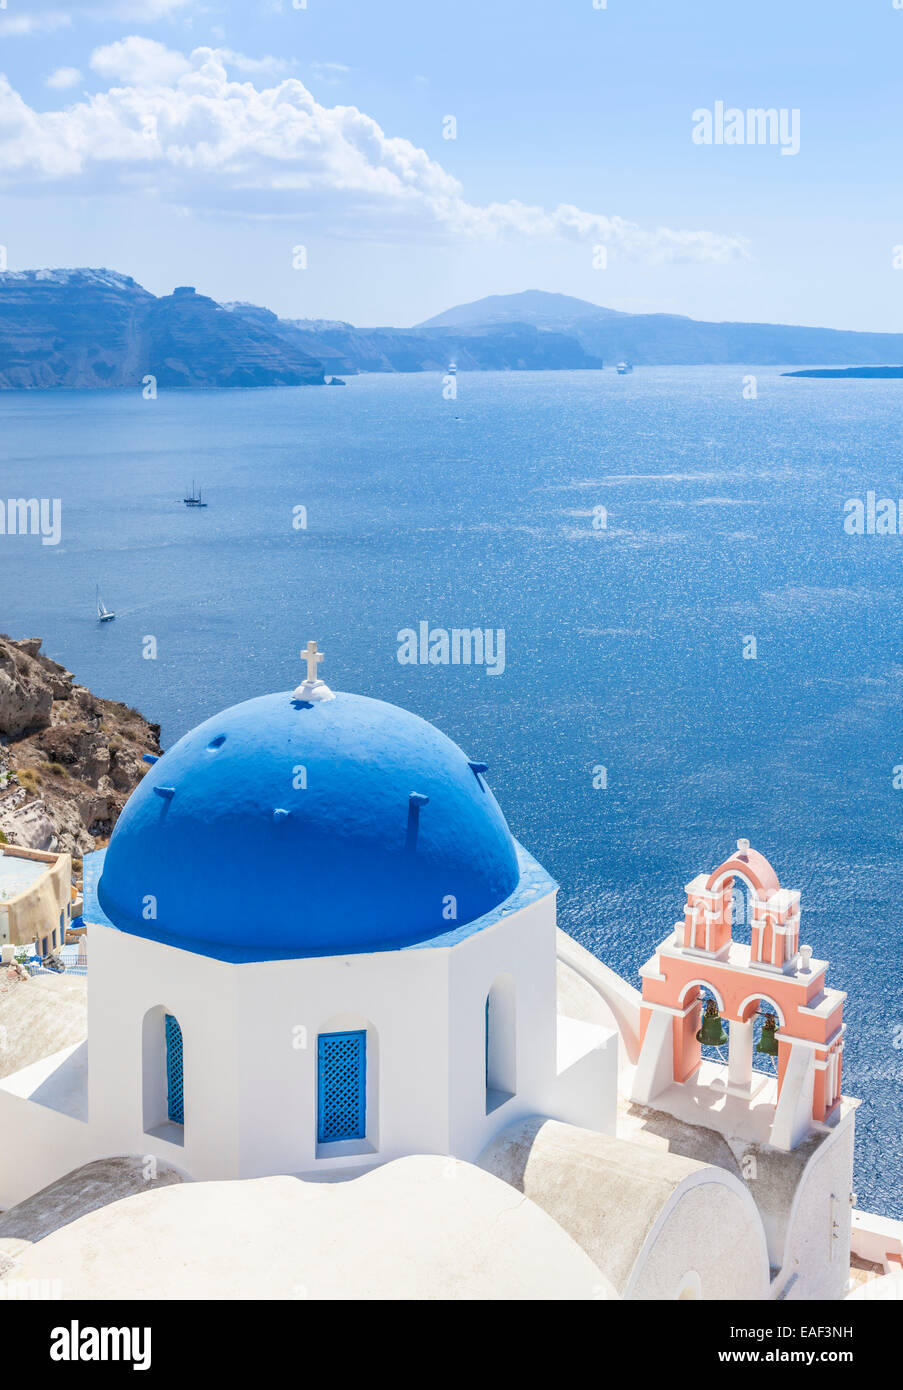 L'église grecque blanc avec dôme bleu & pink Bell Tower, Oia, Santorin, Santorini, Cyclades, îles grecques, Grèce, Union européenne, Europe Banque D'Images